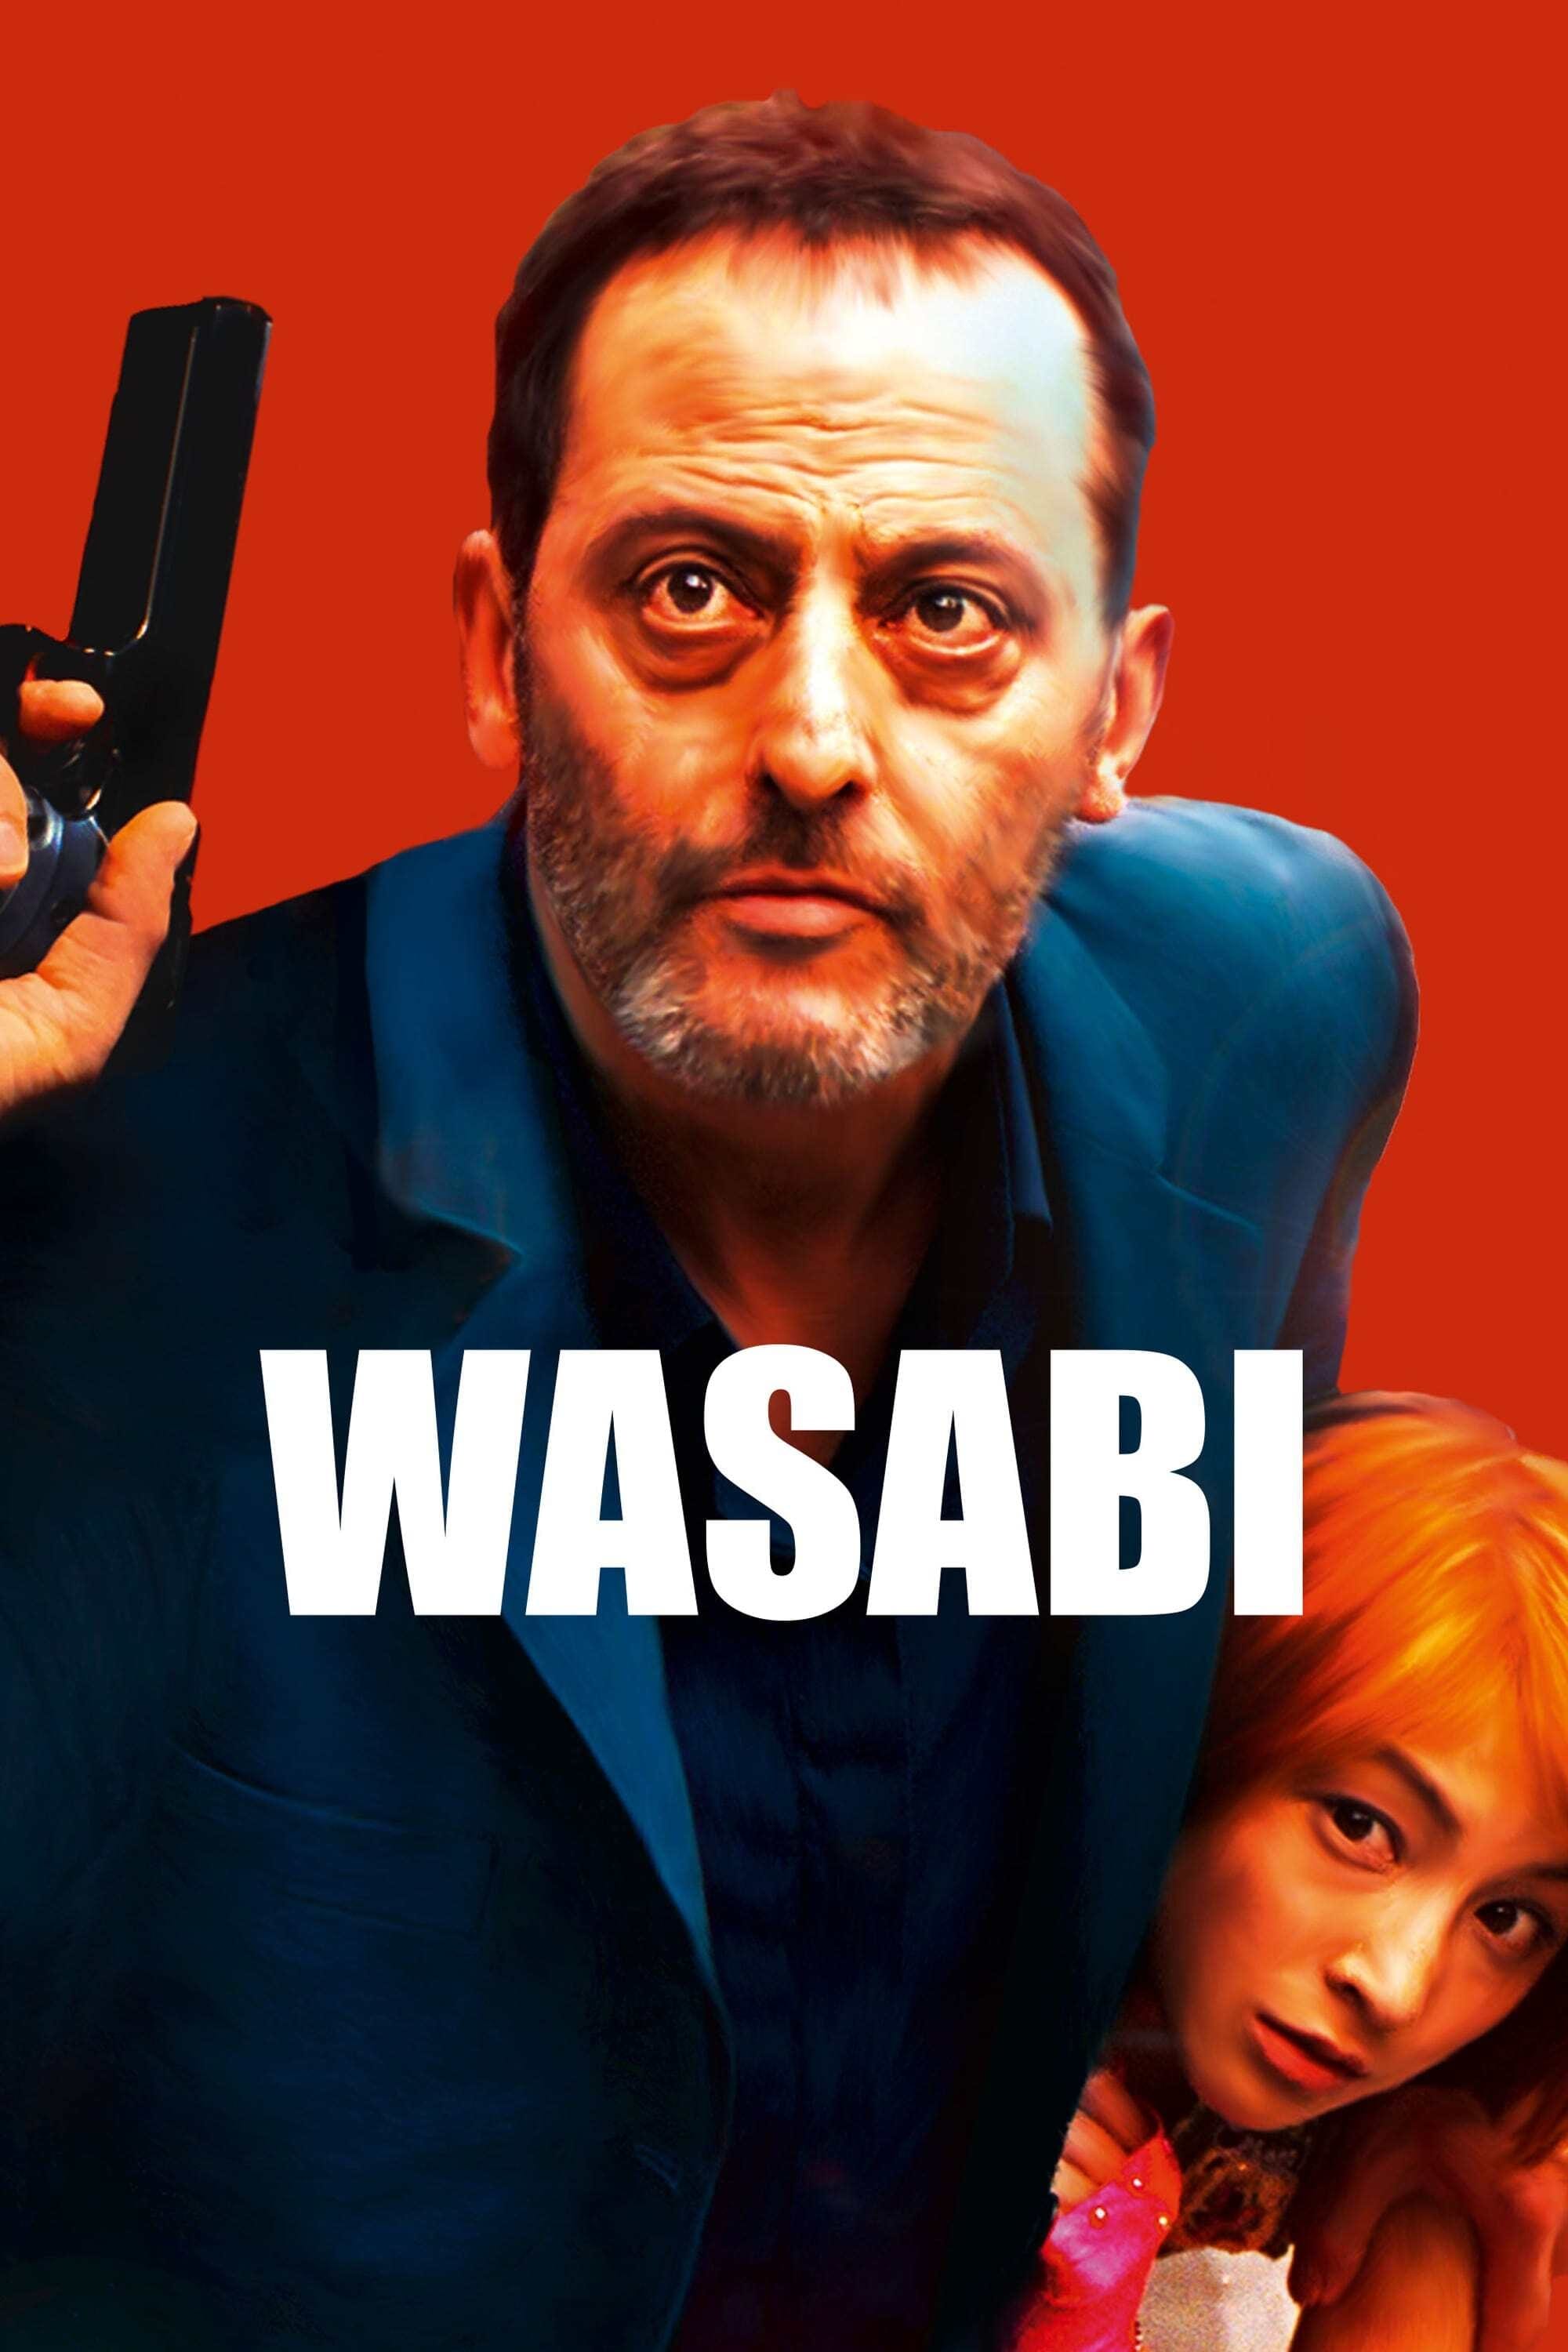 Wasabi: El trato sucio de la mafia